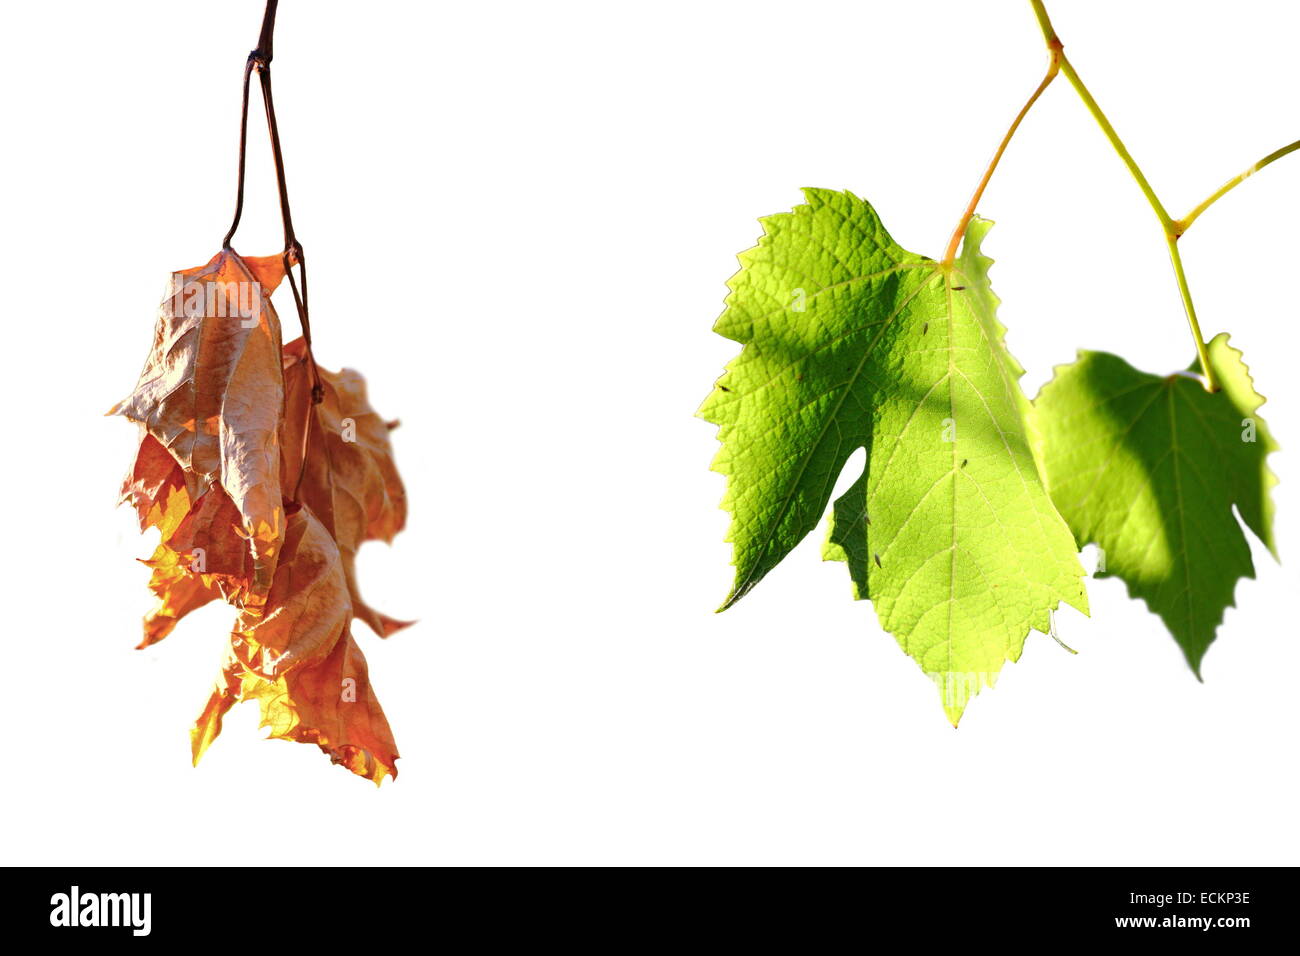 La vie et la mort, concept vert et s'est évanoui vigne leafs isolated over white, contraste Banque D'Images